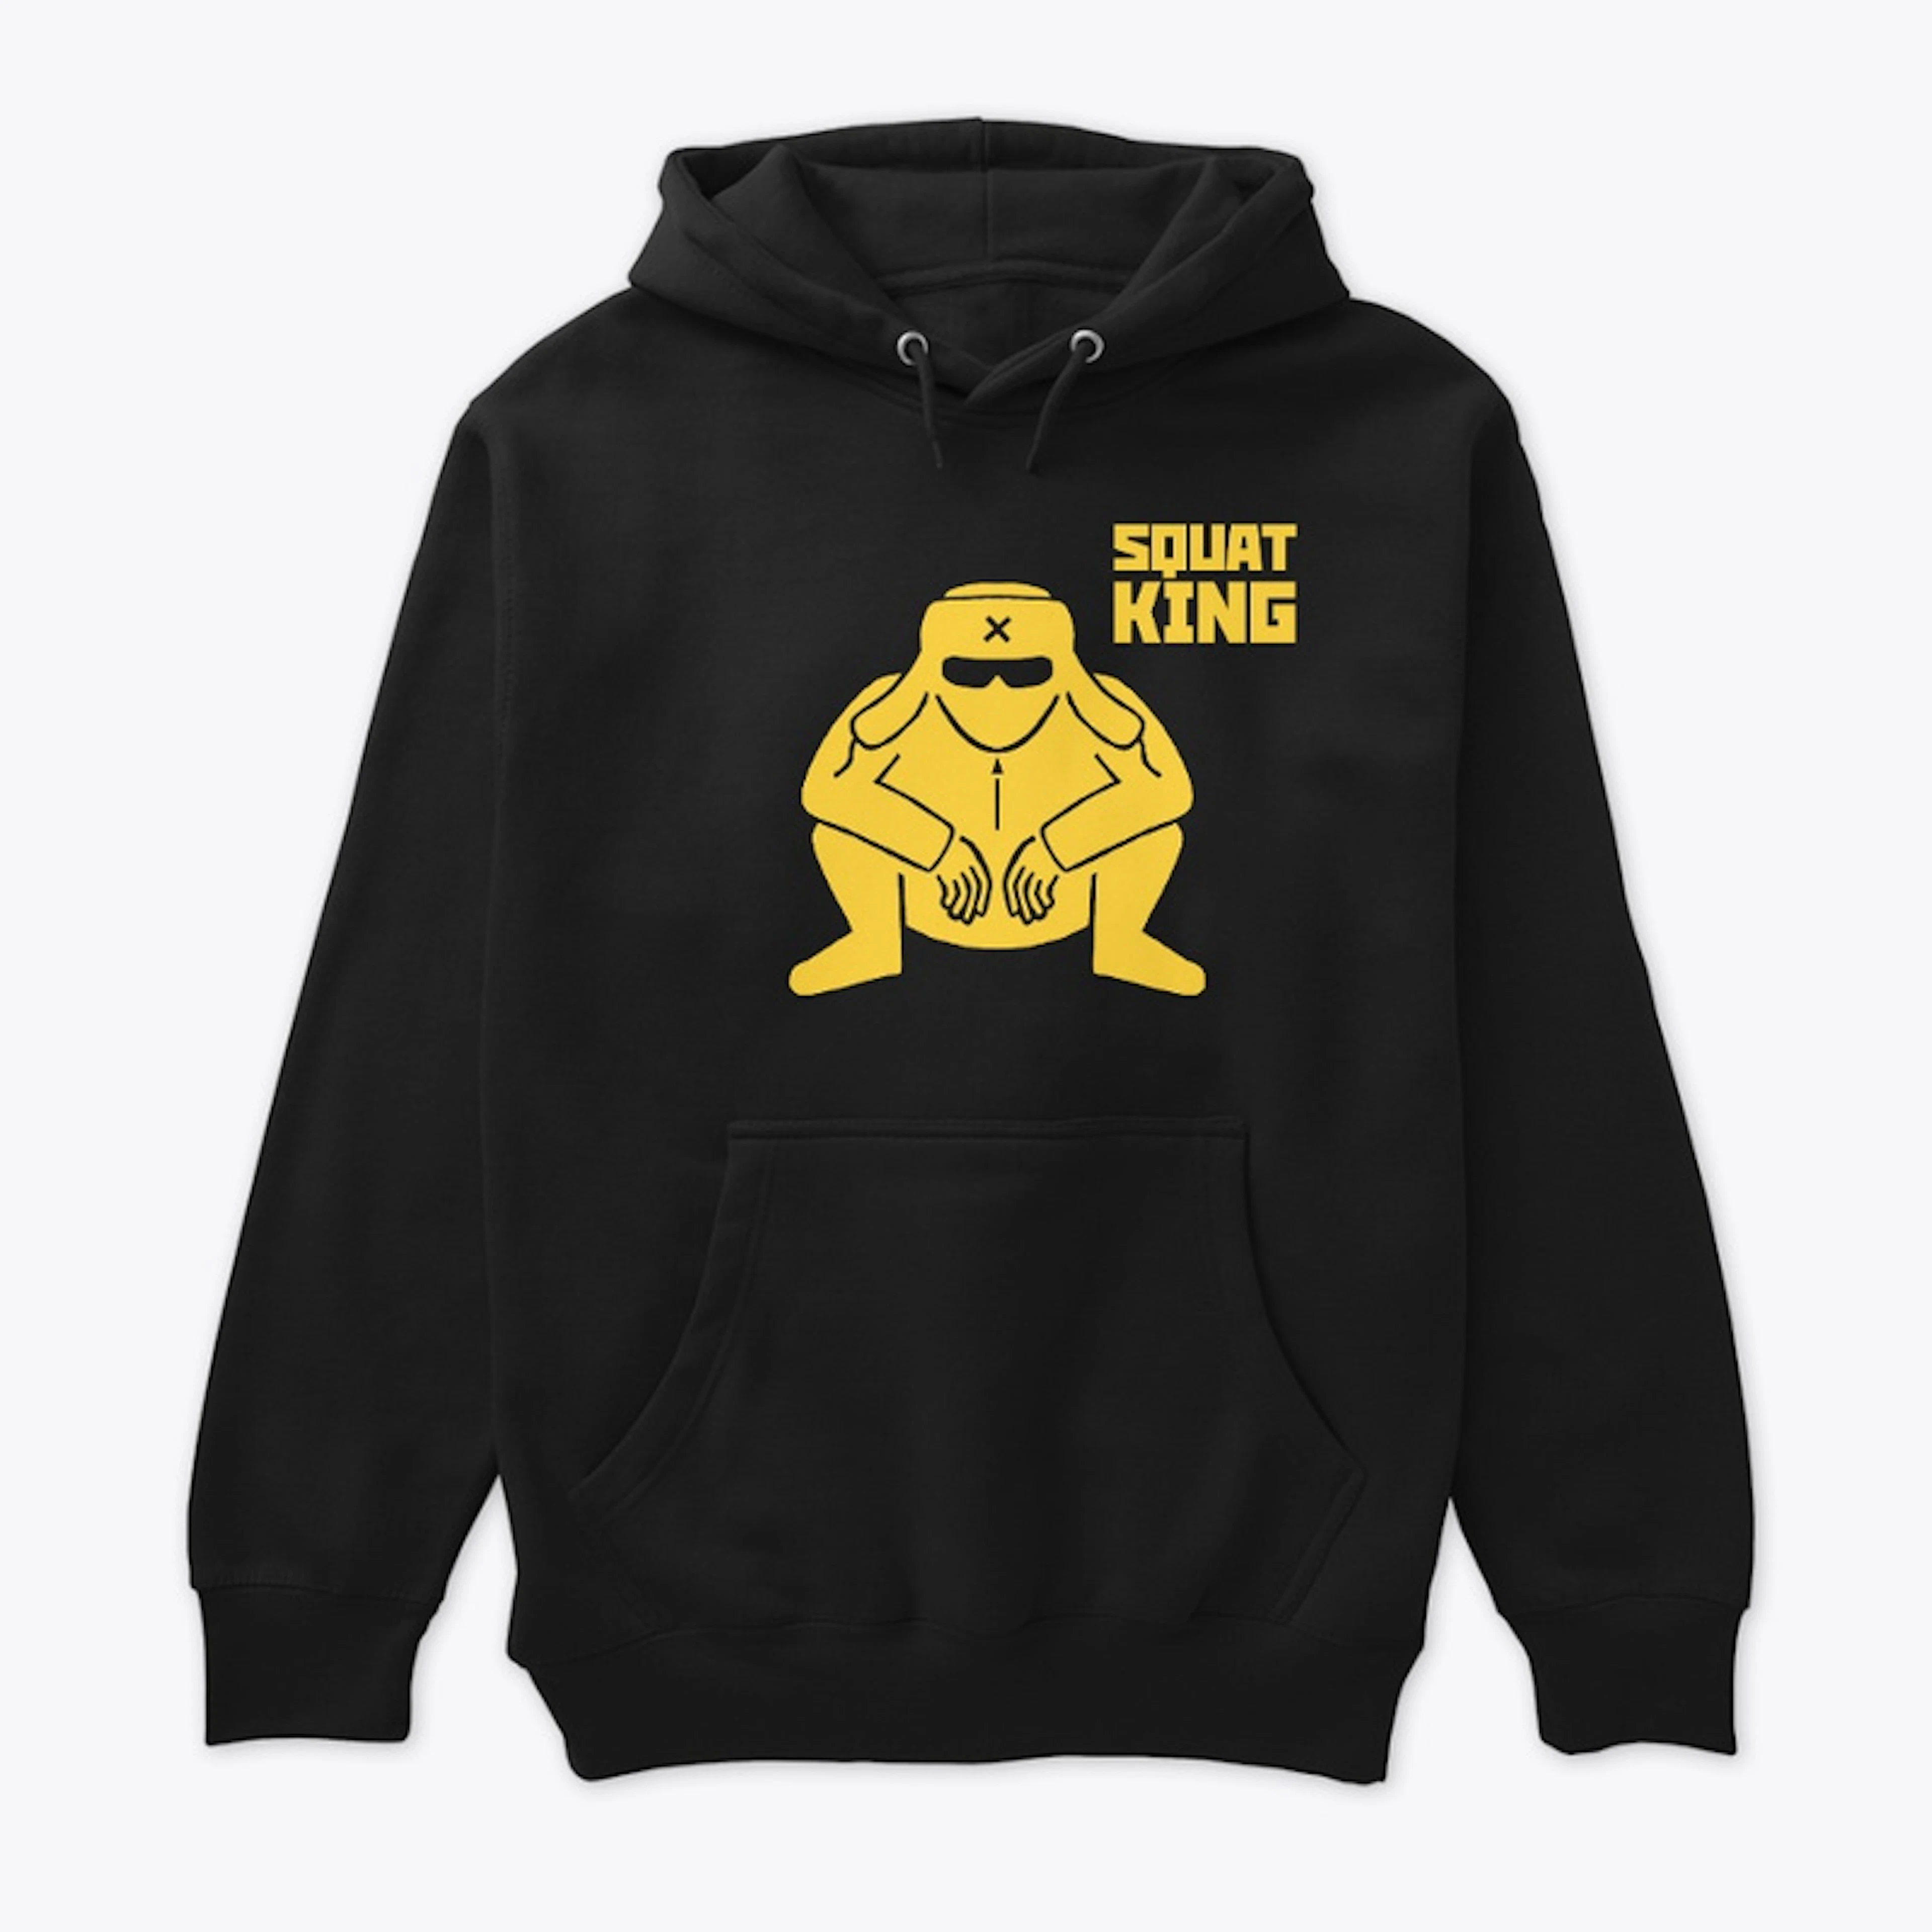 Squat King hoodie